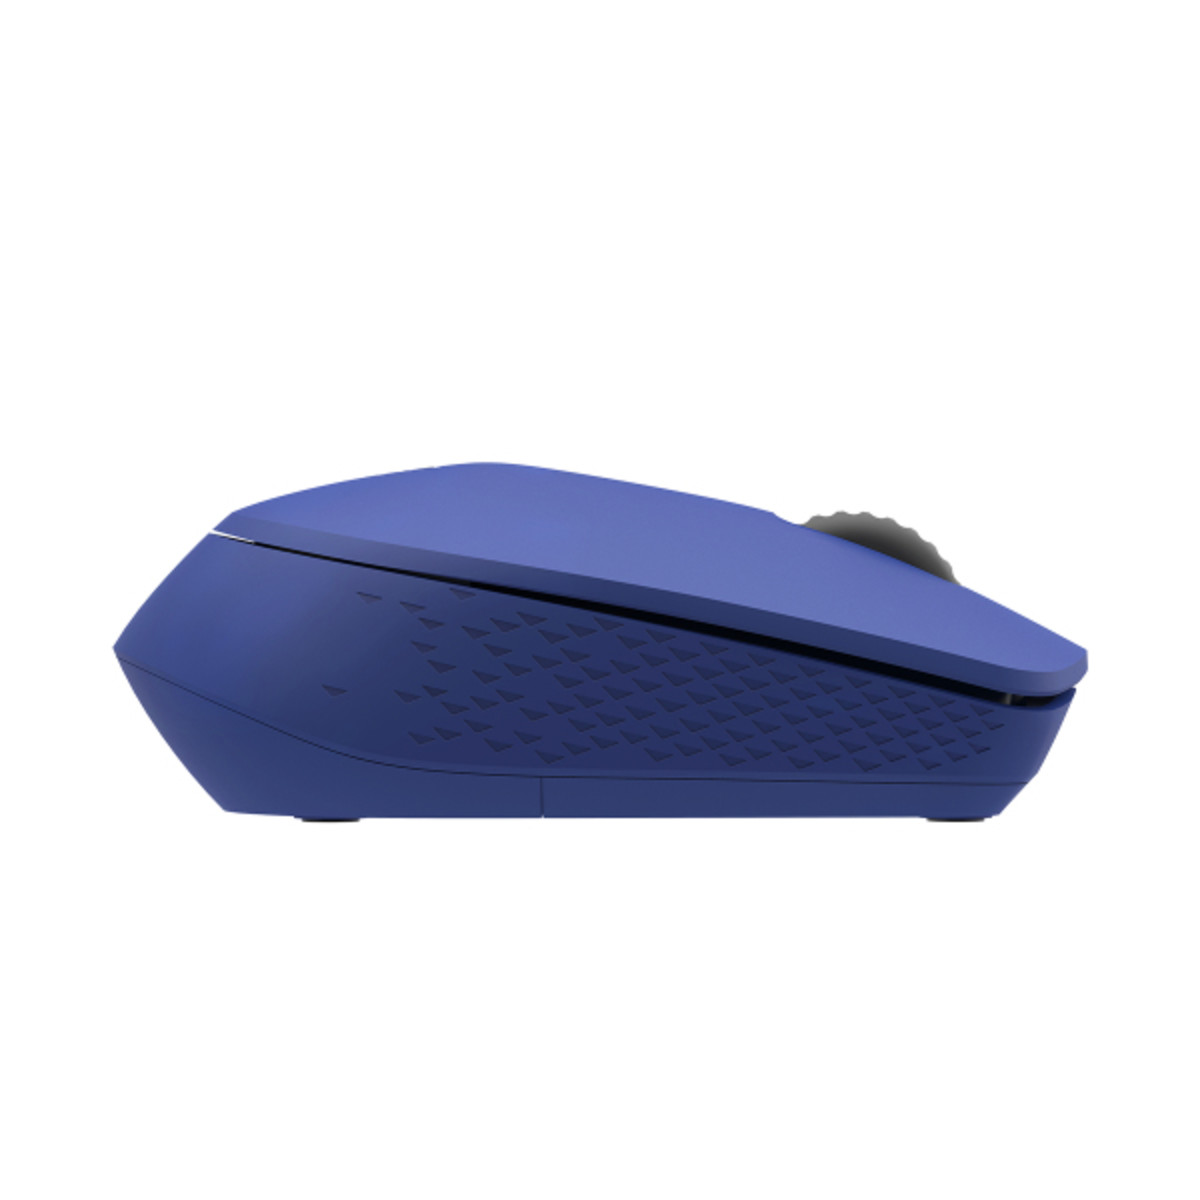 M100 Comfy Silent Multi-Mode Mouse-Blue